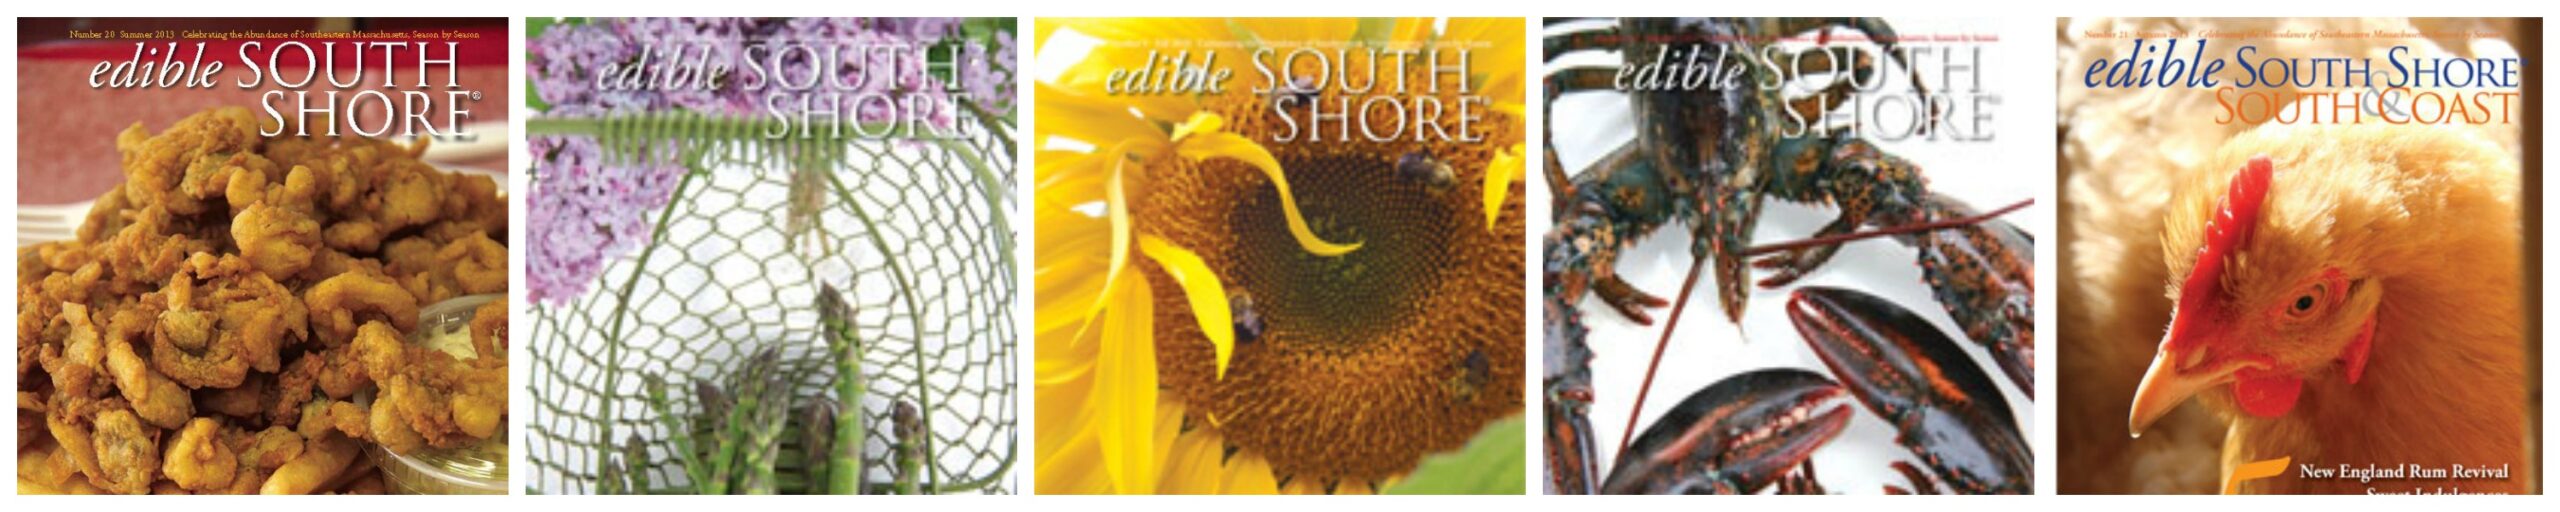 subscribe to edible south shore